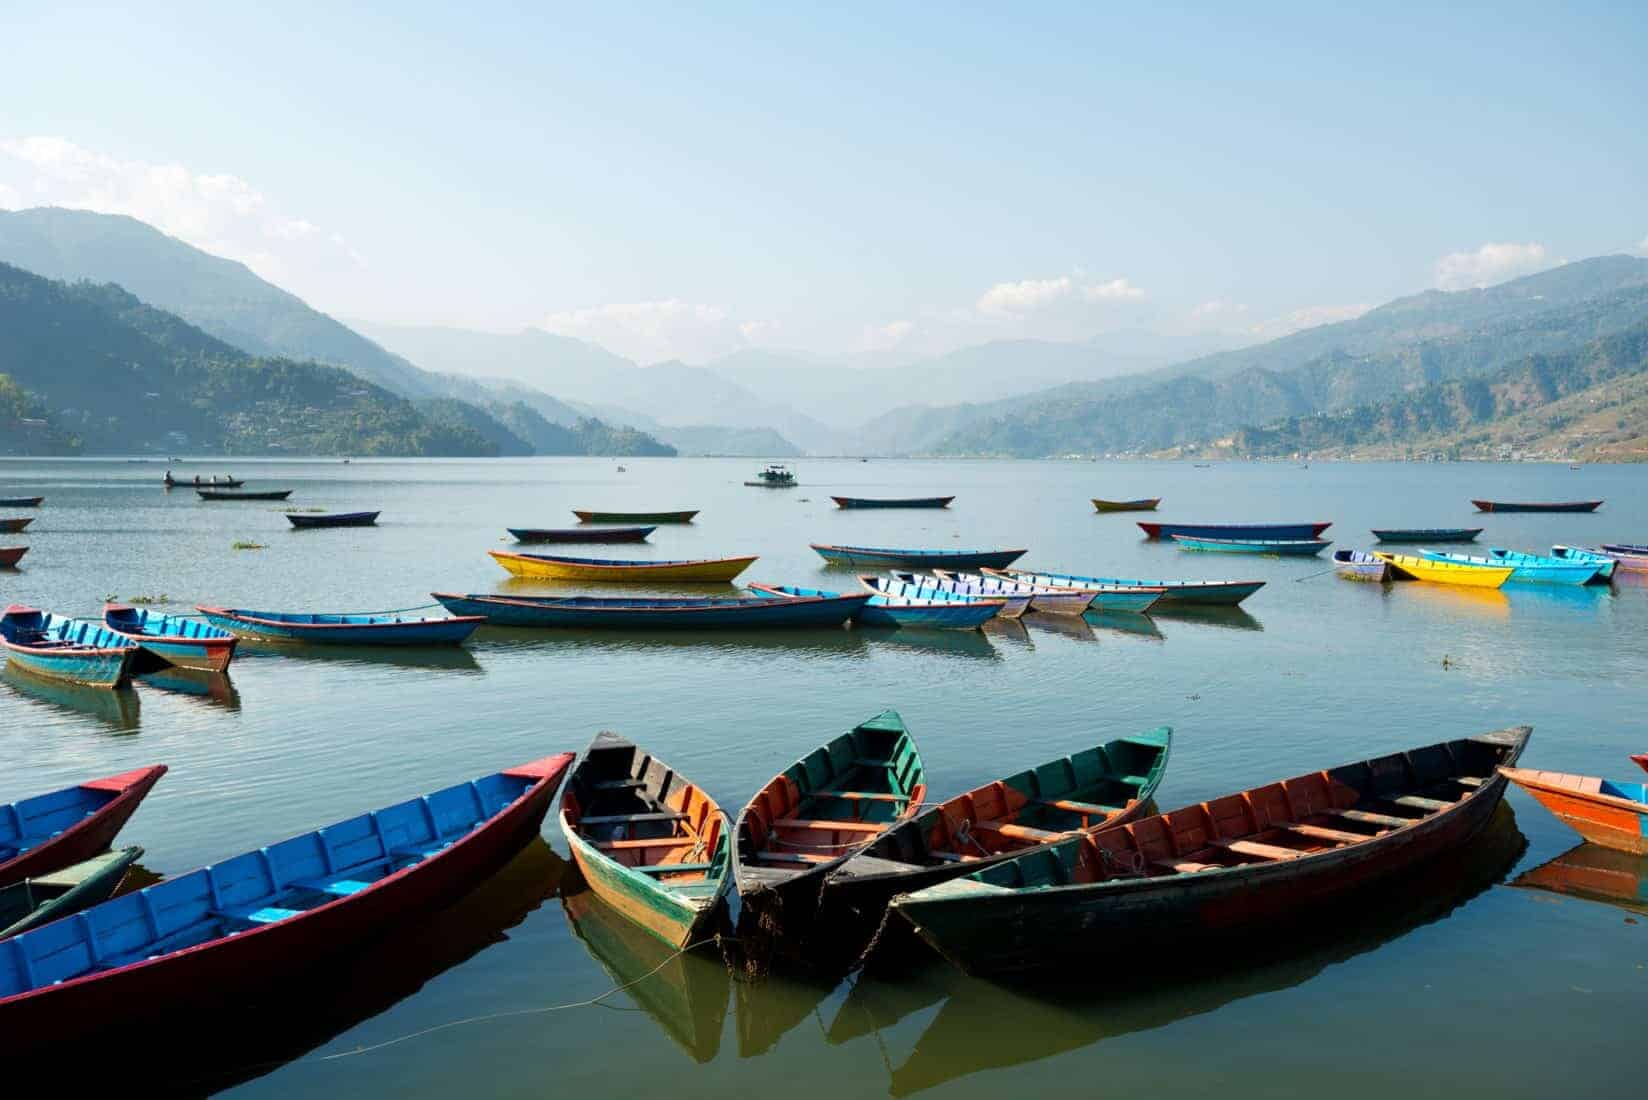 Pokhara, Nepal. Boat, water